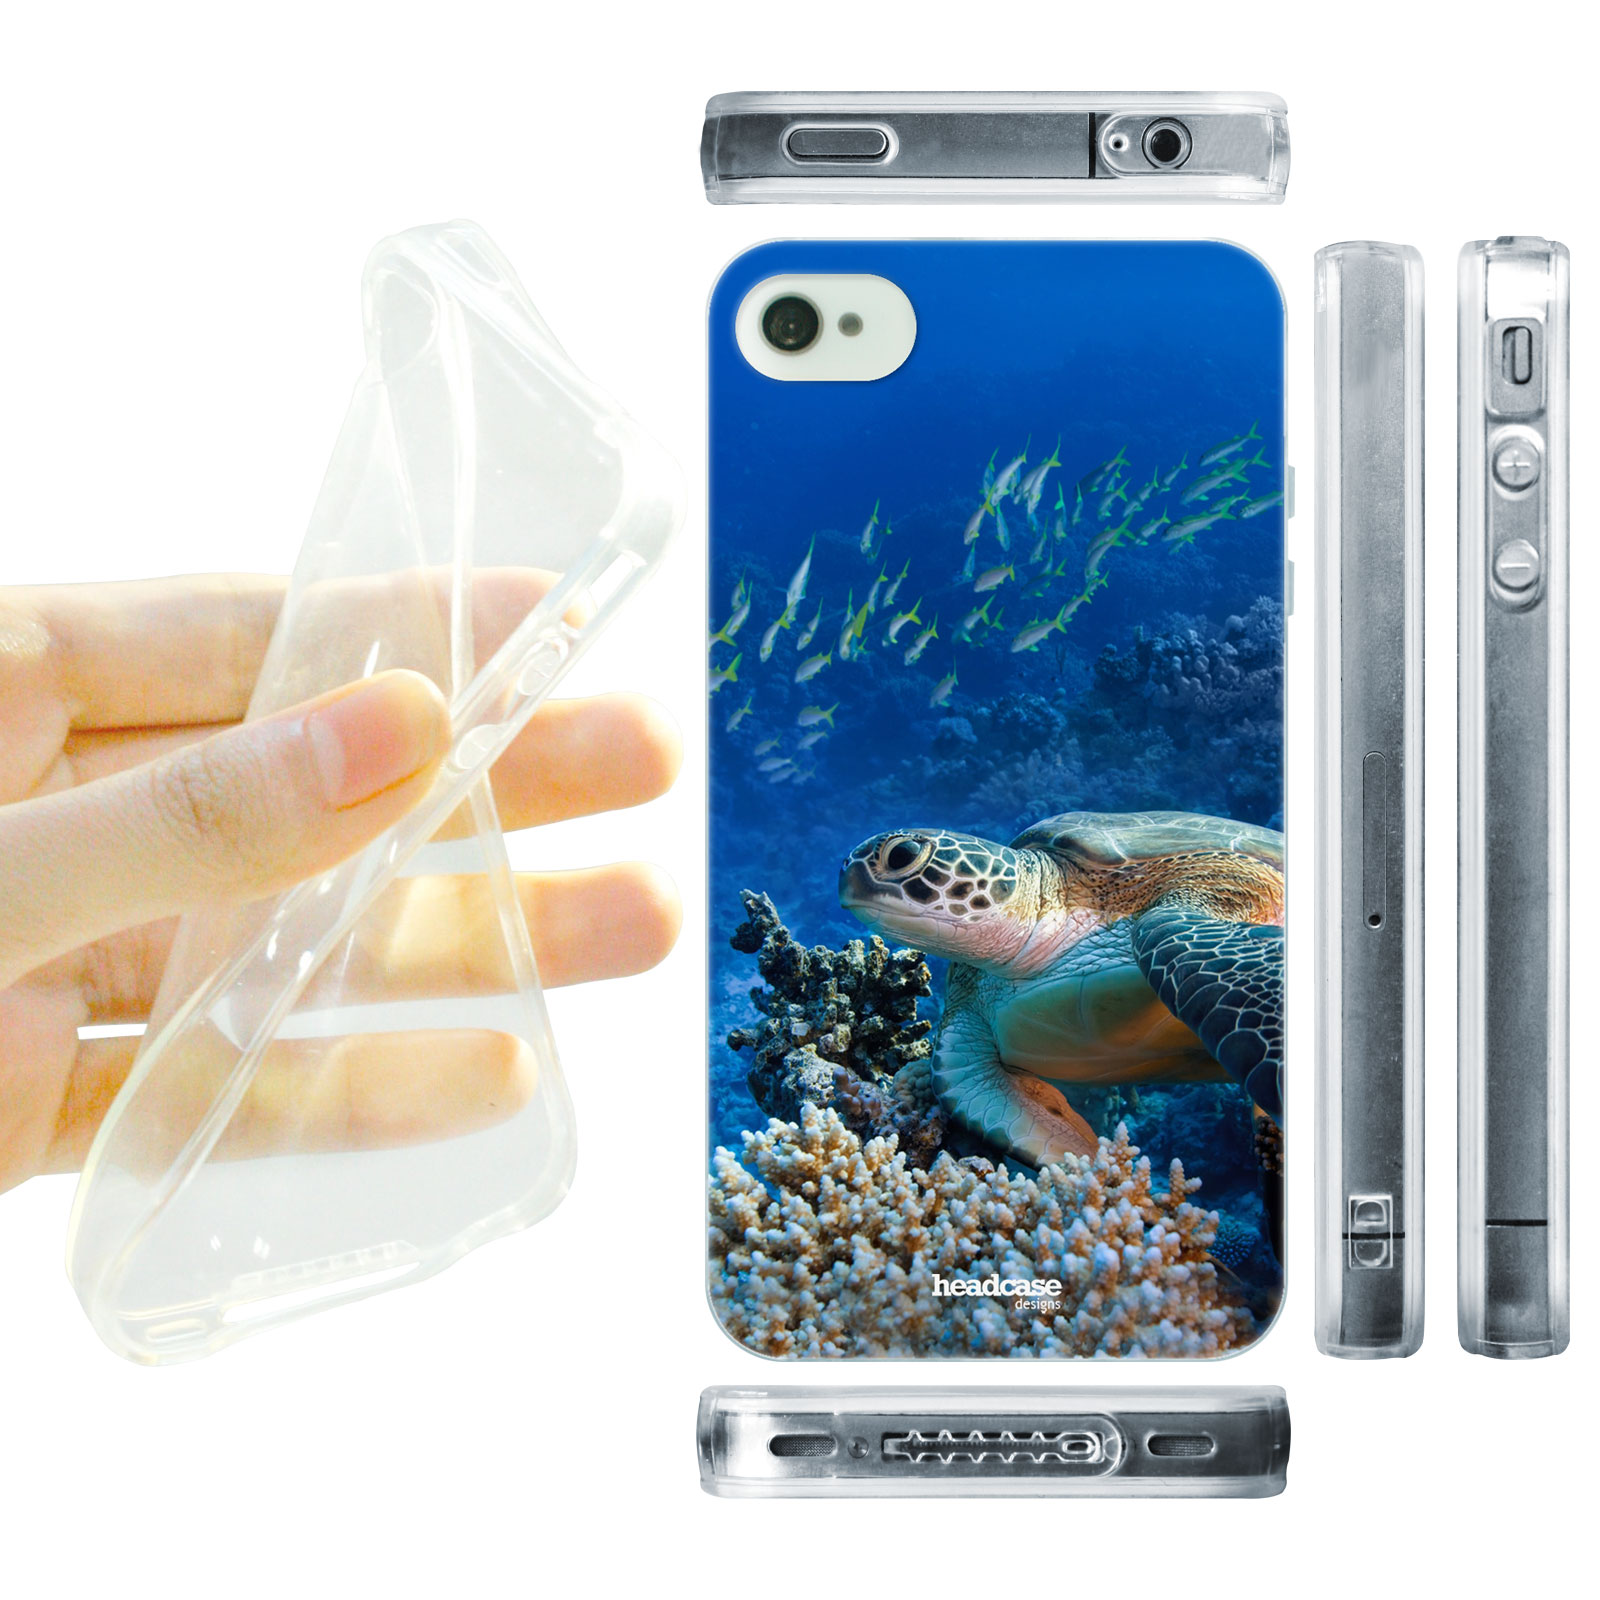 HEAD CASE silikonový obal na mobil Iphone 4/4S podmořský svět mořská želva modrá barva